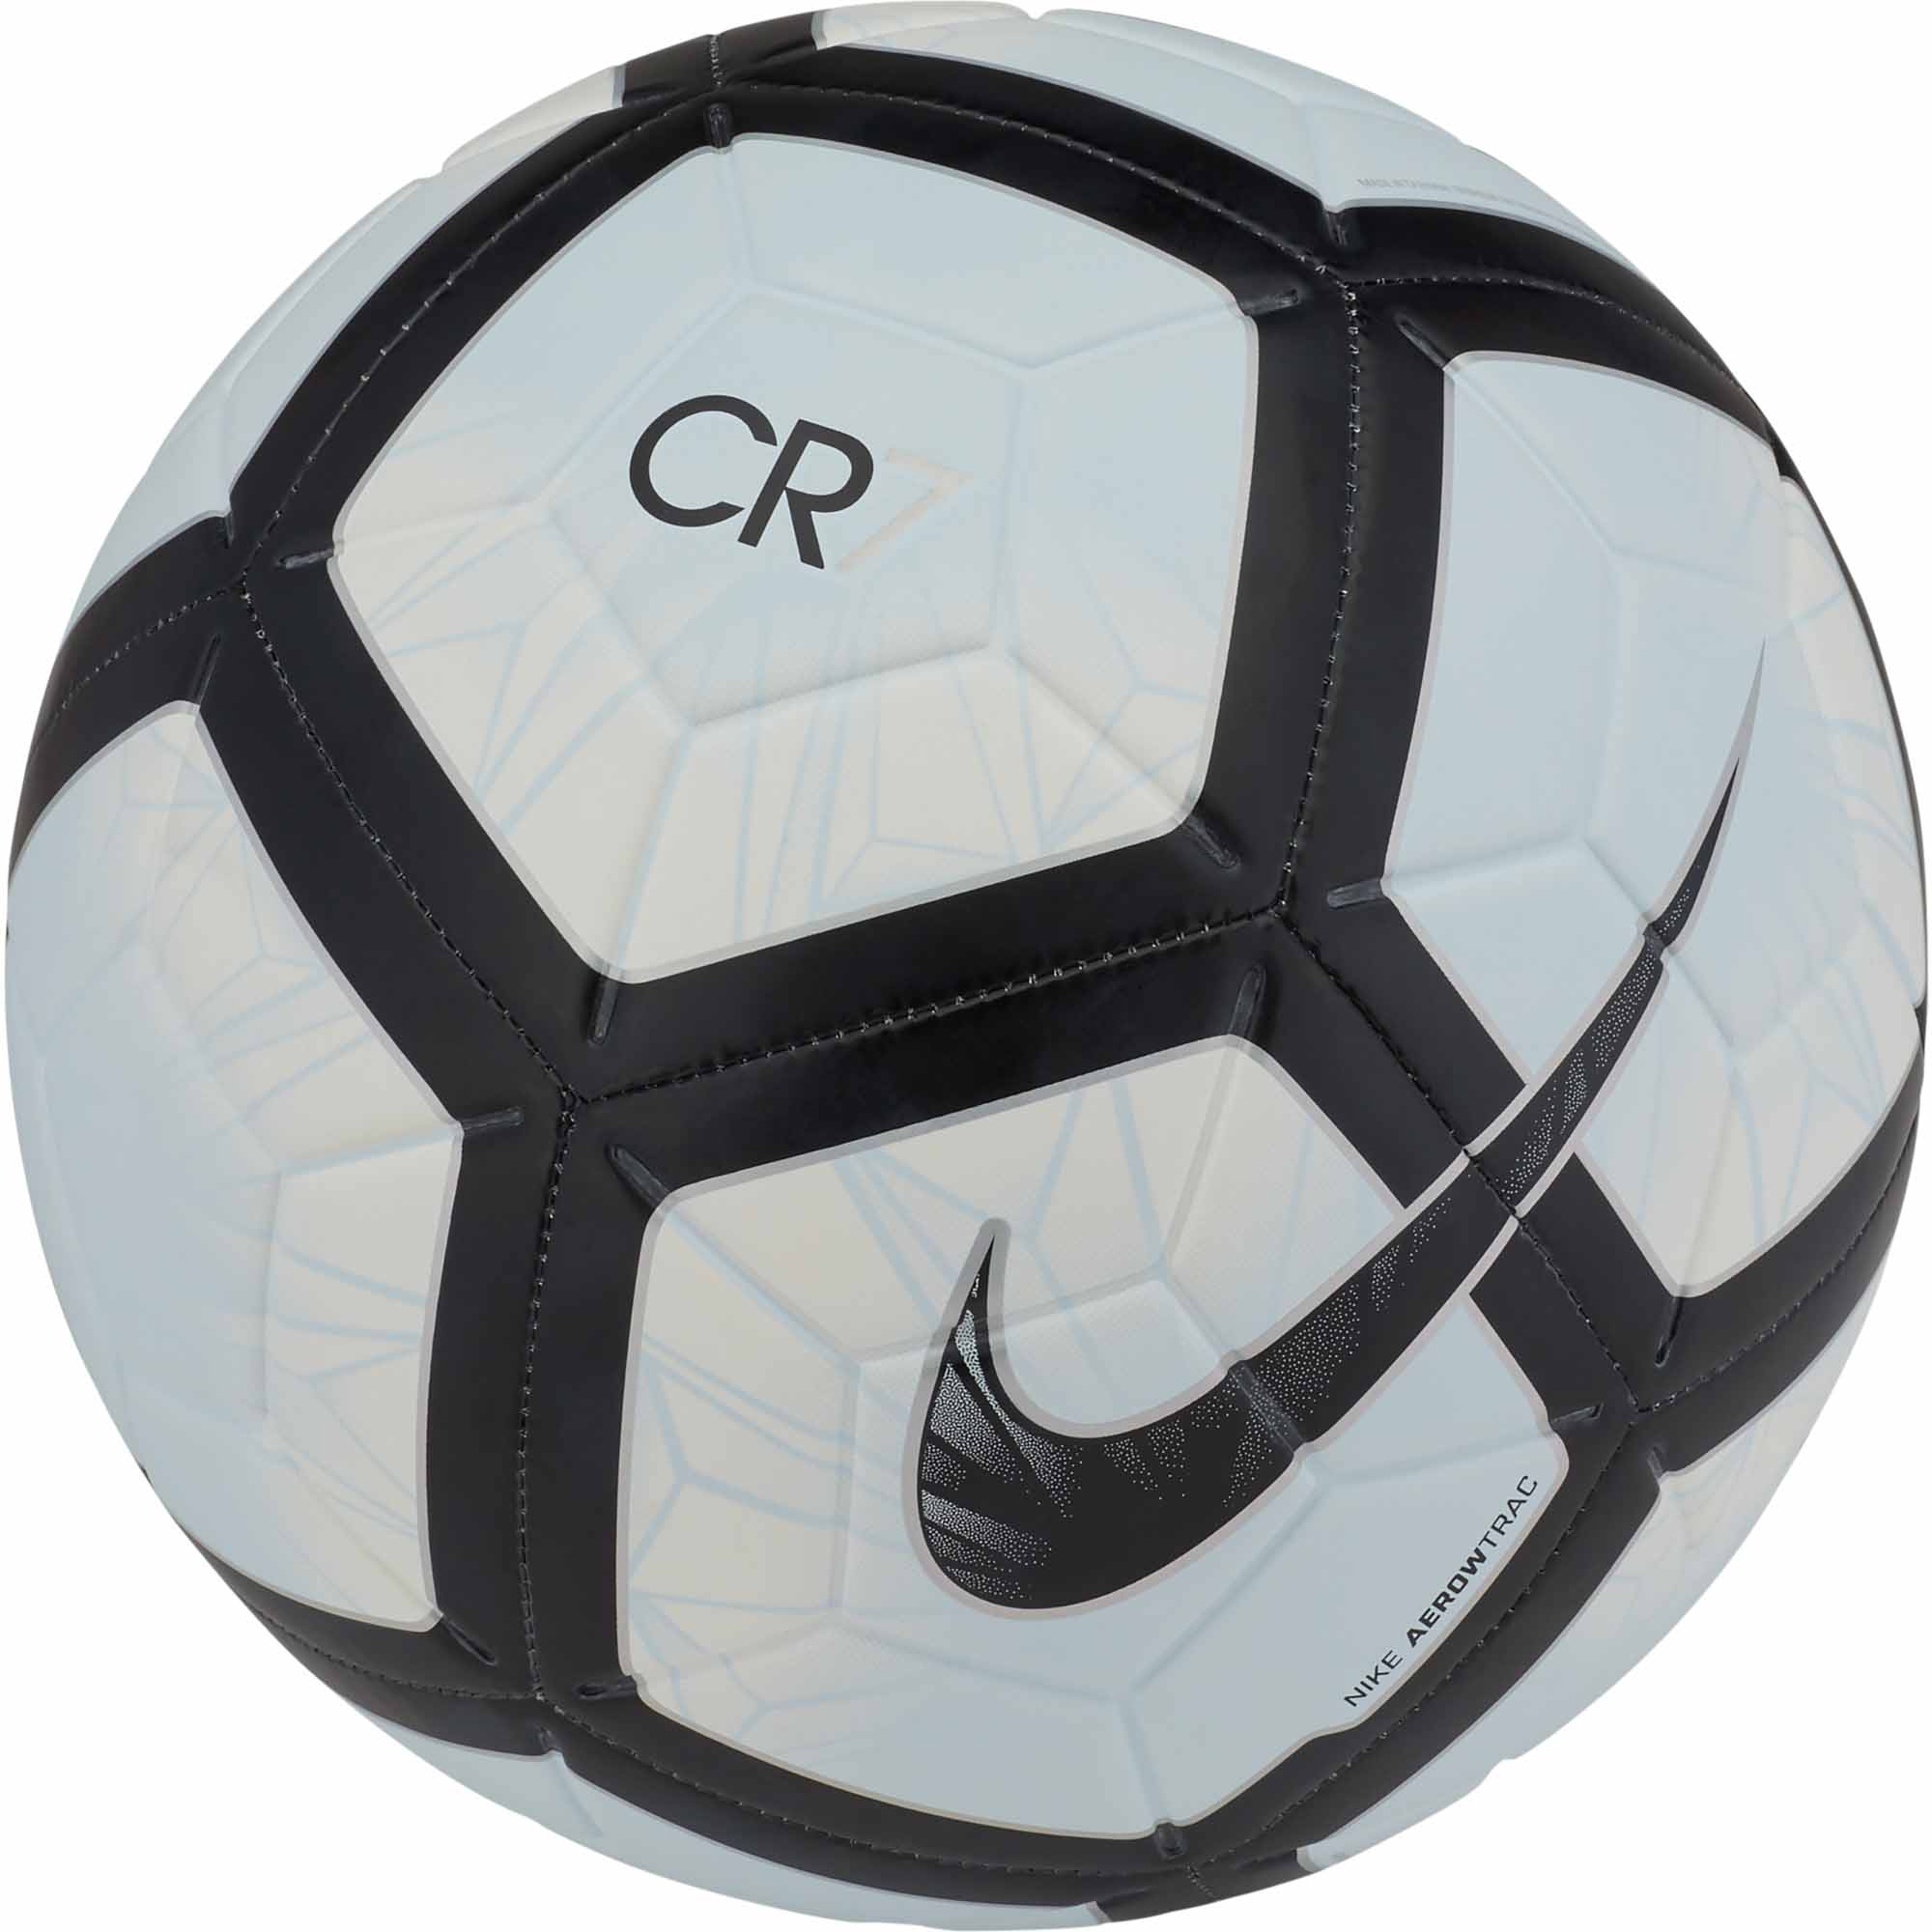 cr7 soccer ball